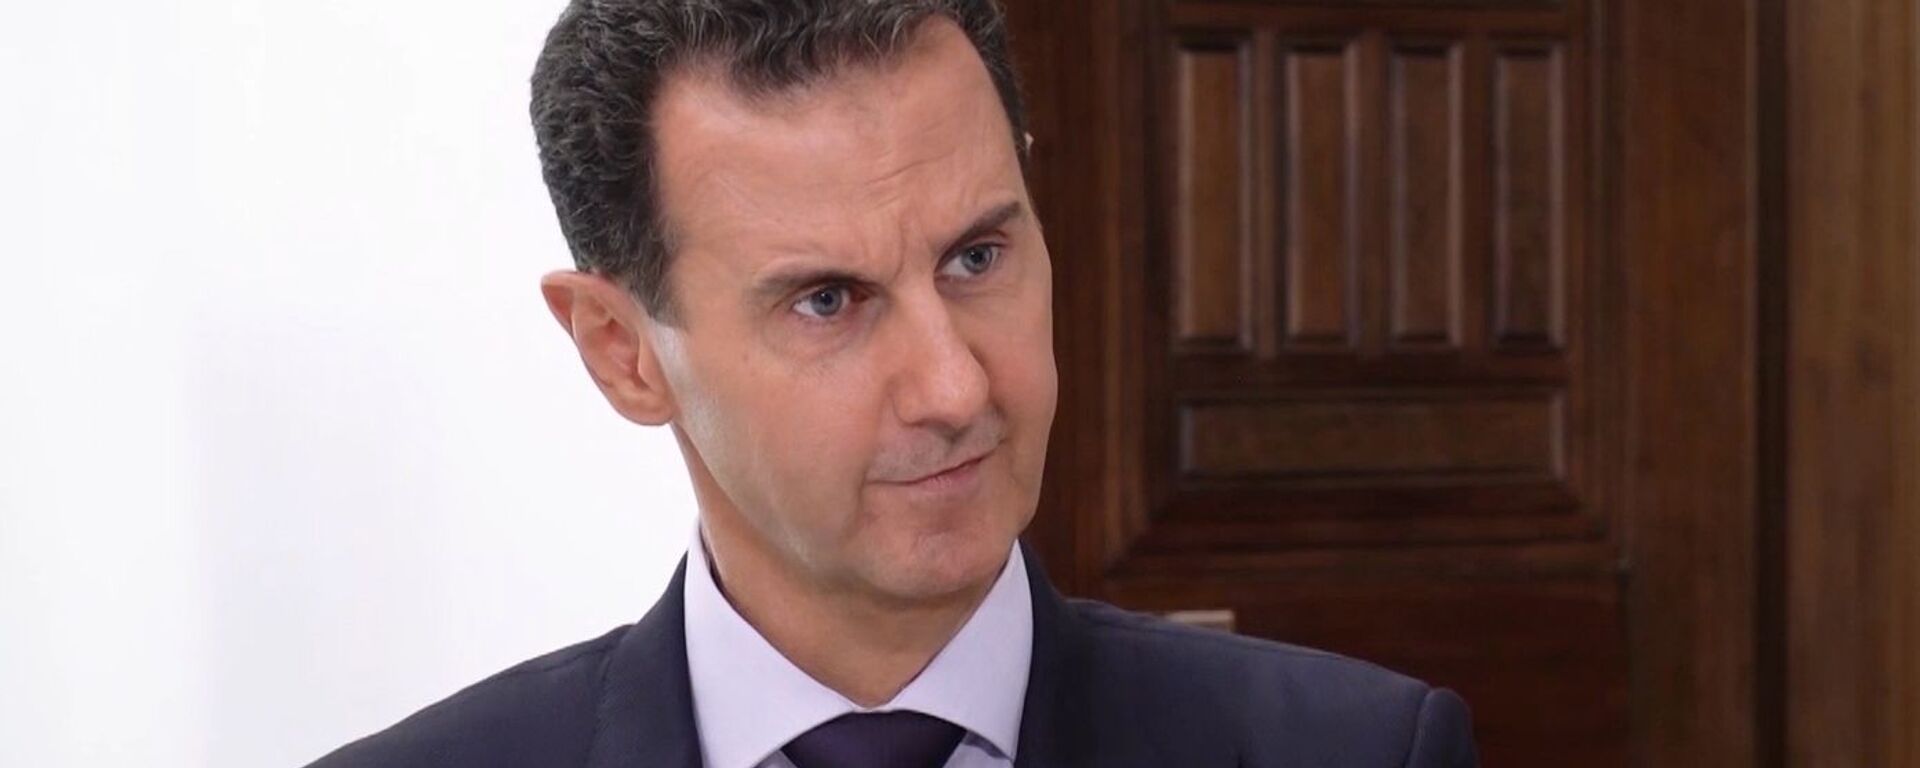 El presidente de Siria, Bashar Asad - Sputnik Mundo, 1920, 08.10.2020